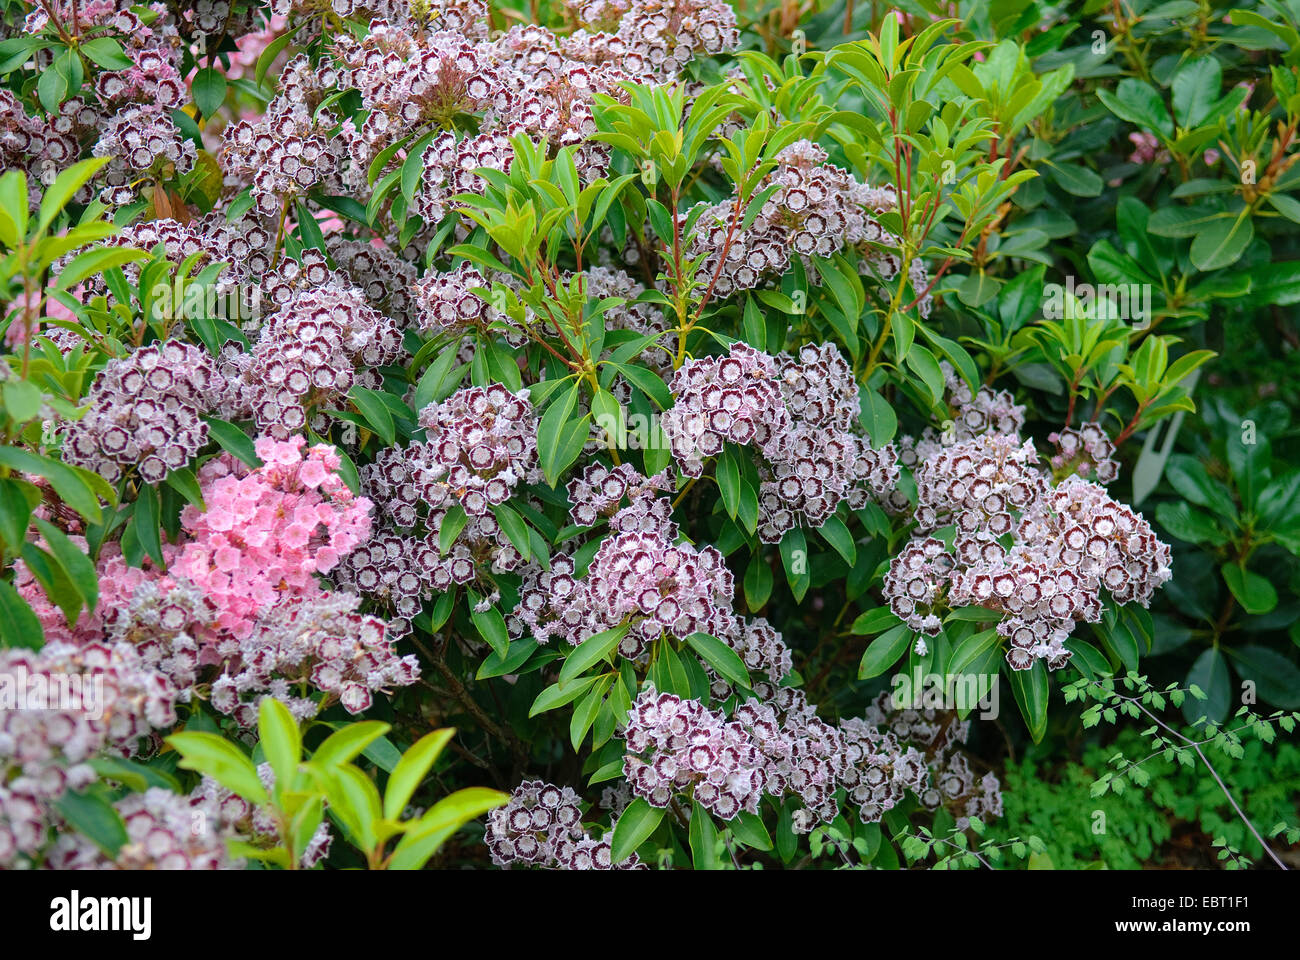 El laurel de montaña (Kalmia latifolia 'Nani', Kalmia latifolia), cultivar Nani nani, floreciendo Foto de stock